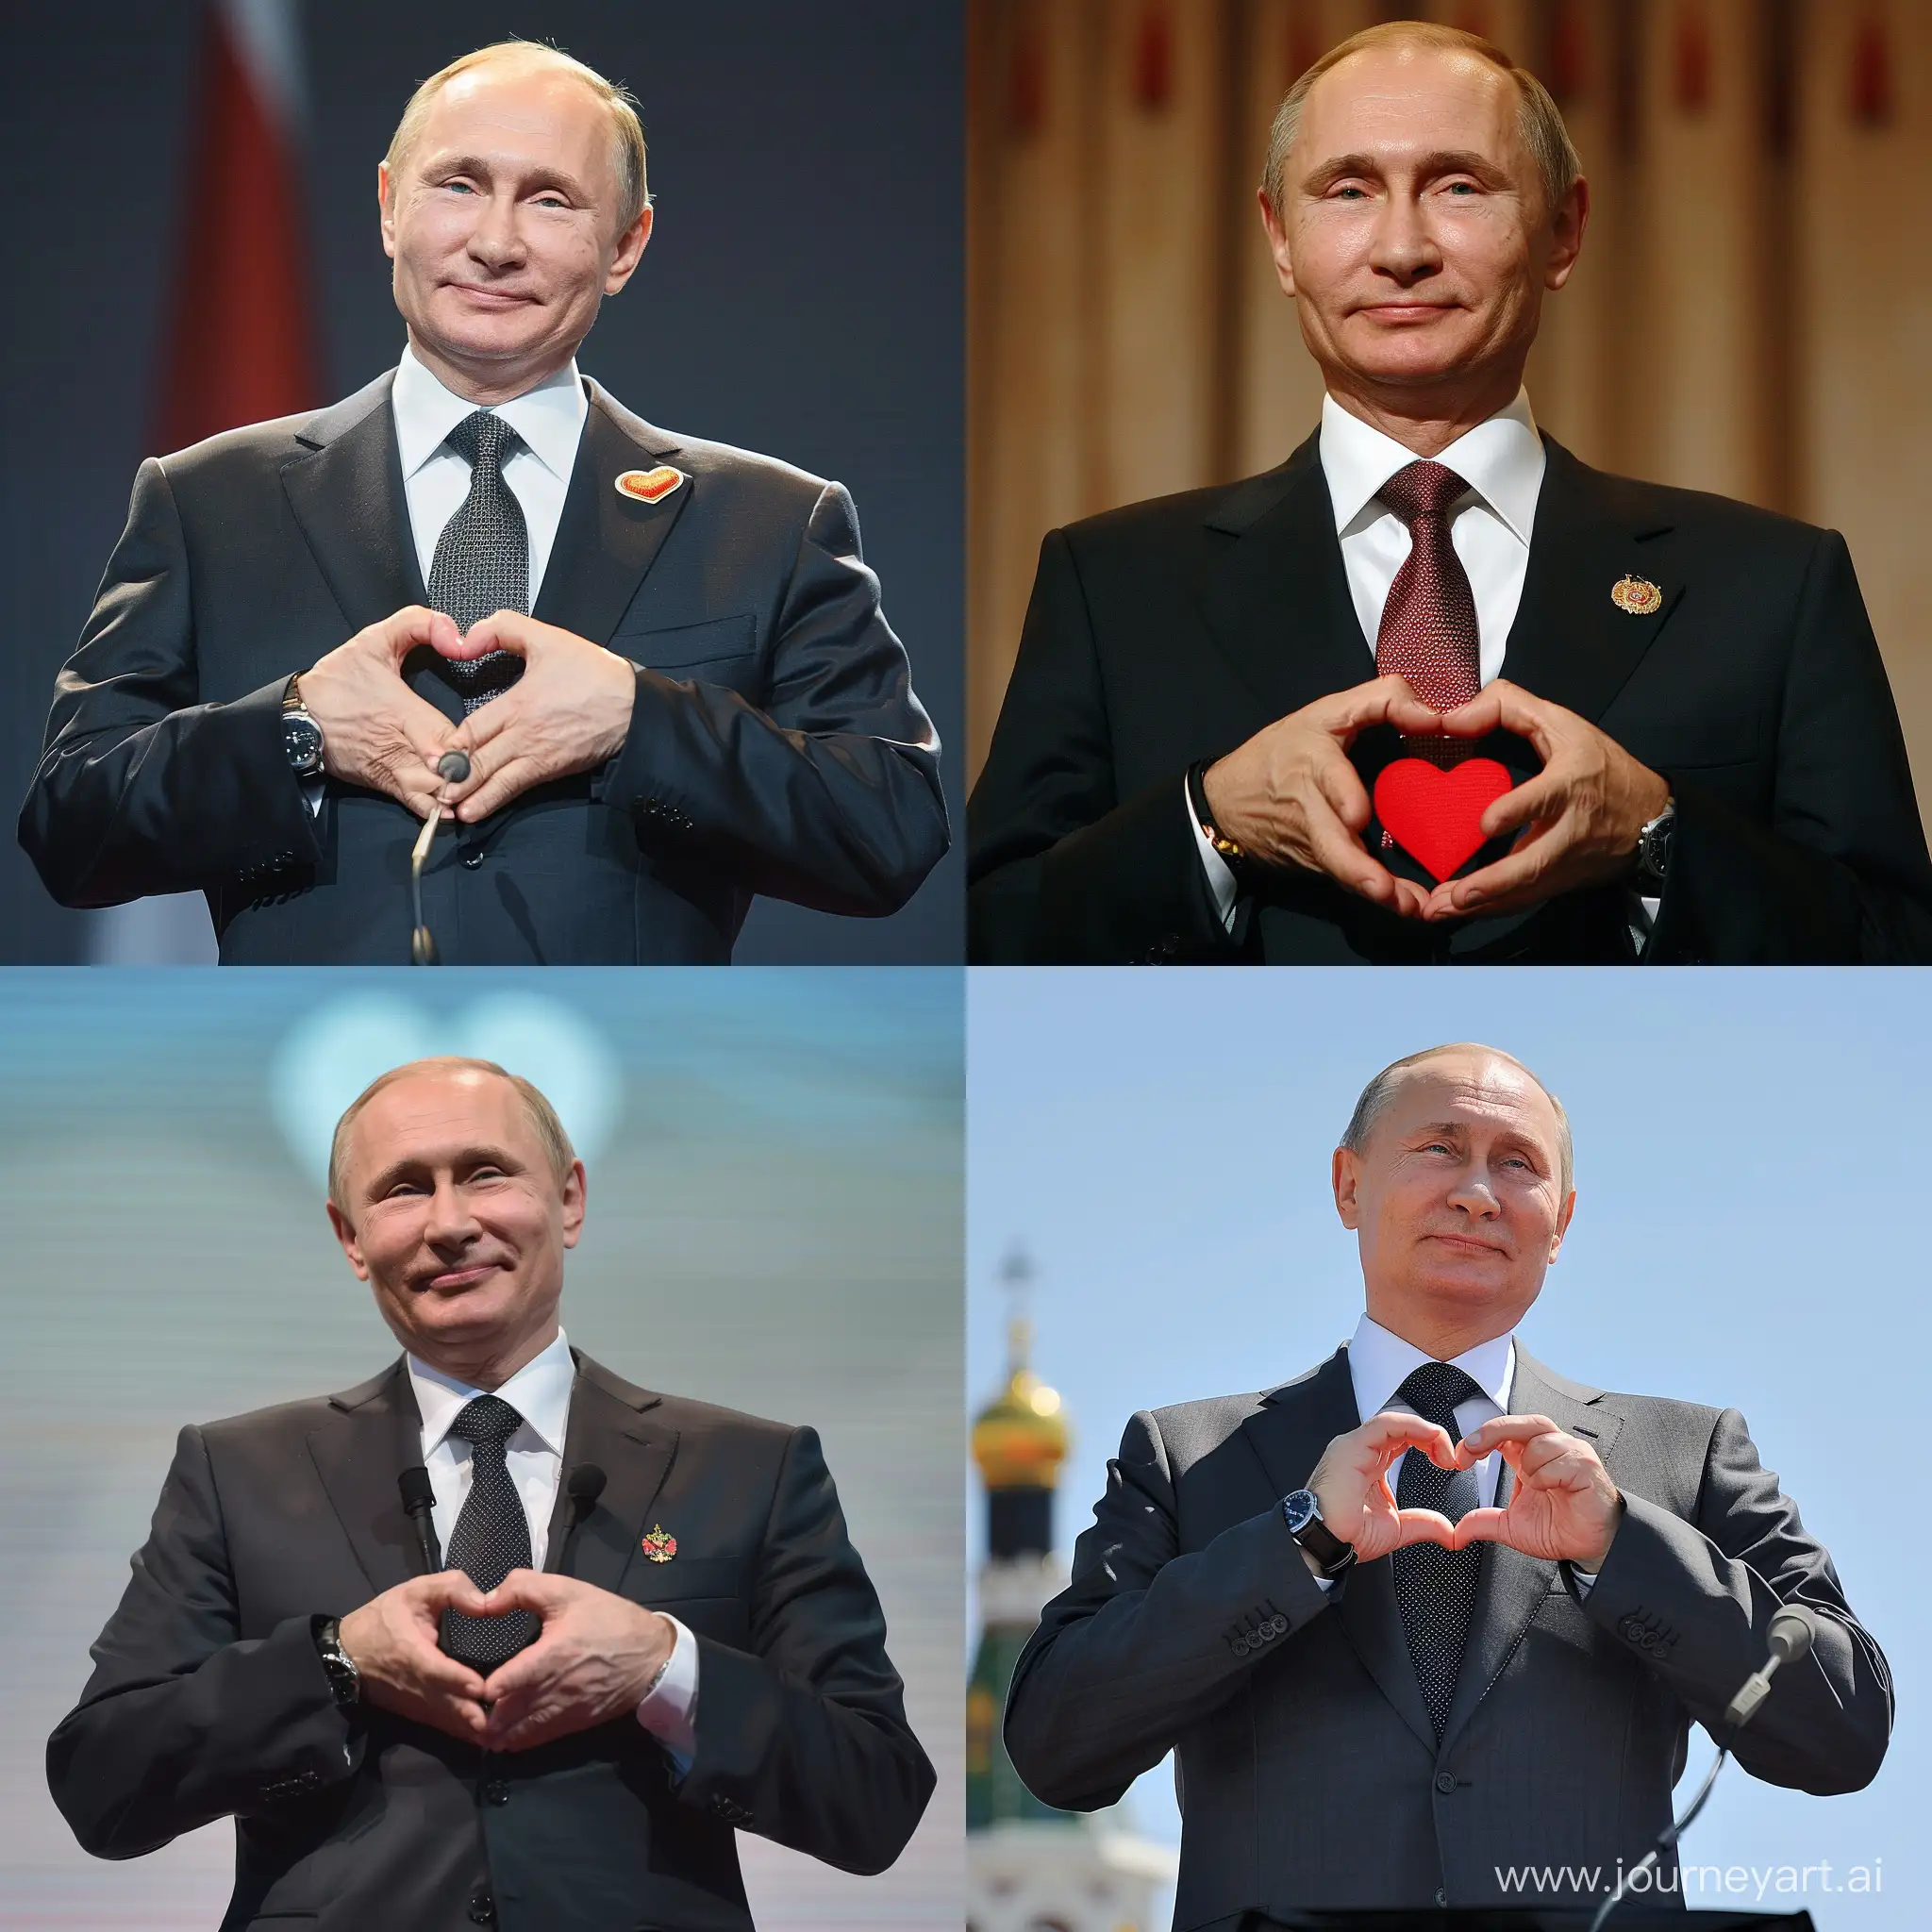 Vladimir-Putin-Gestures-Heart-Symbol-with-Hands